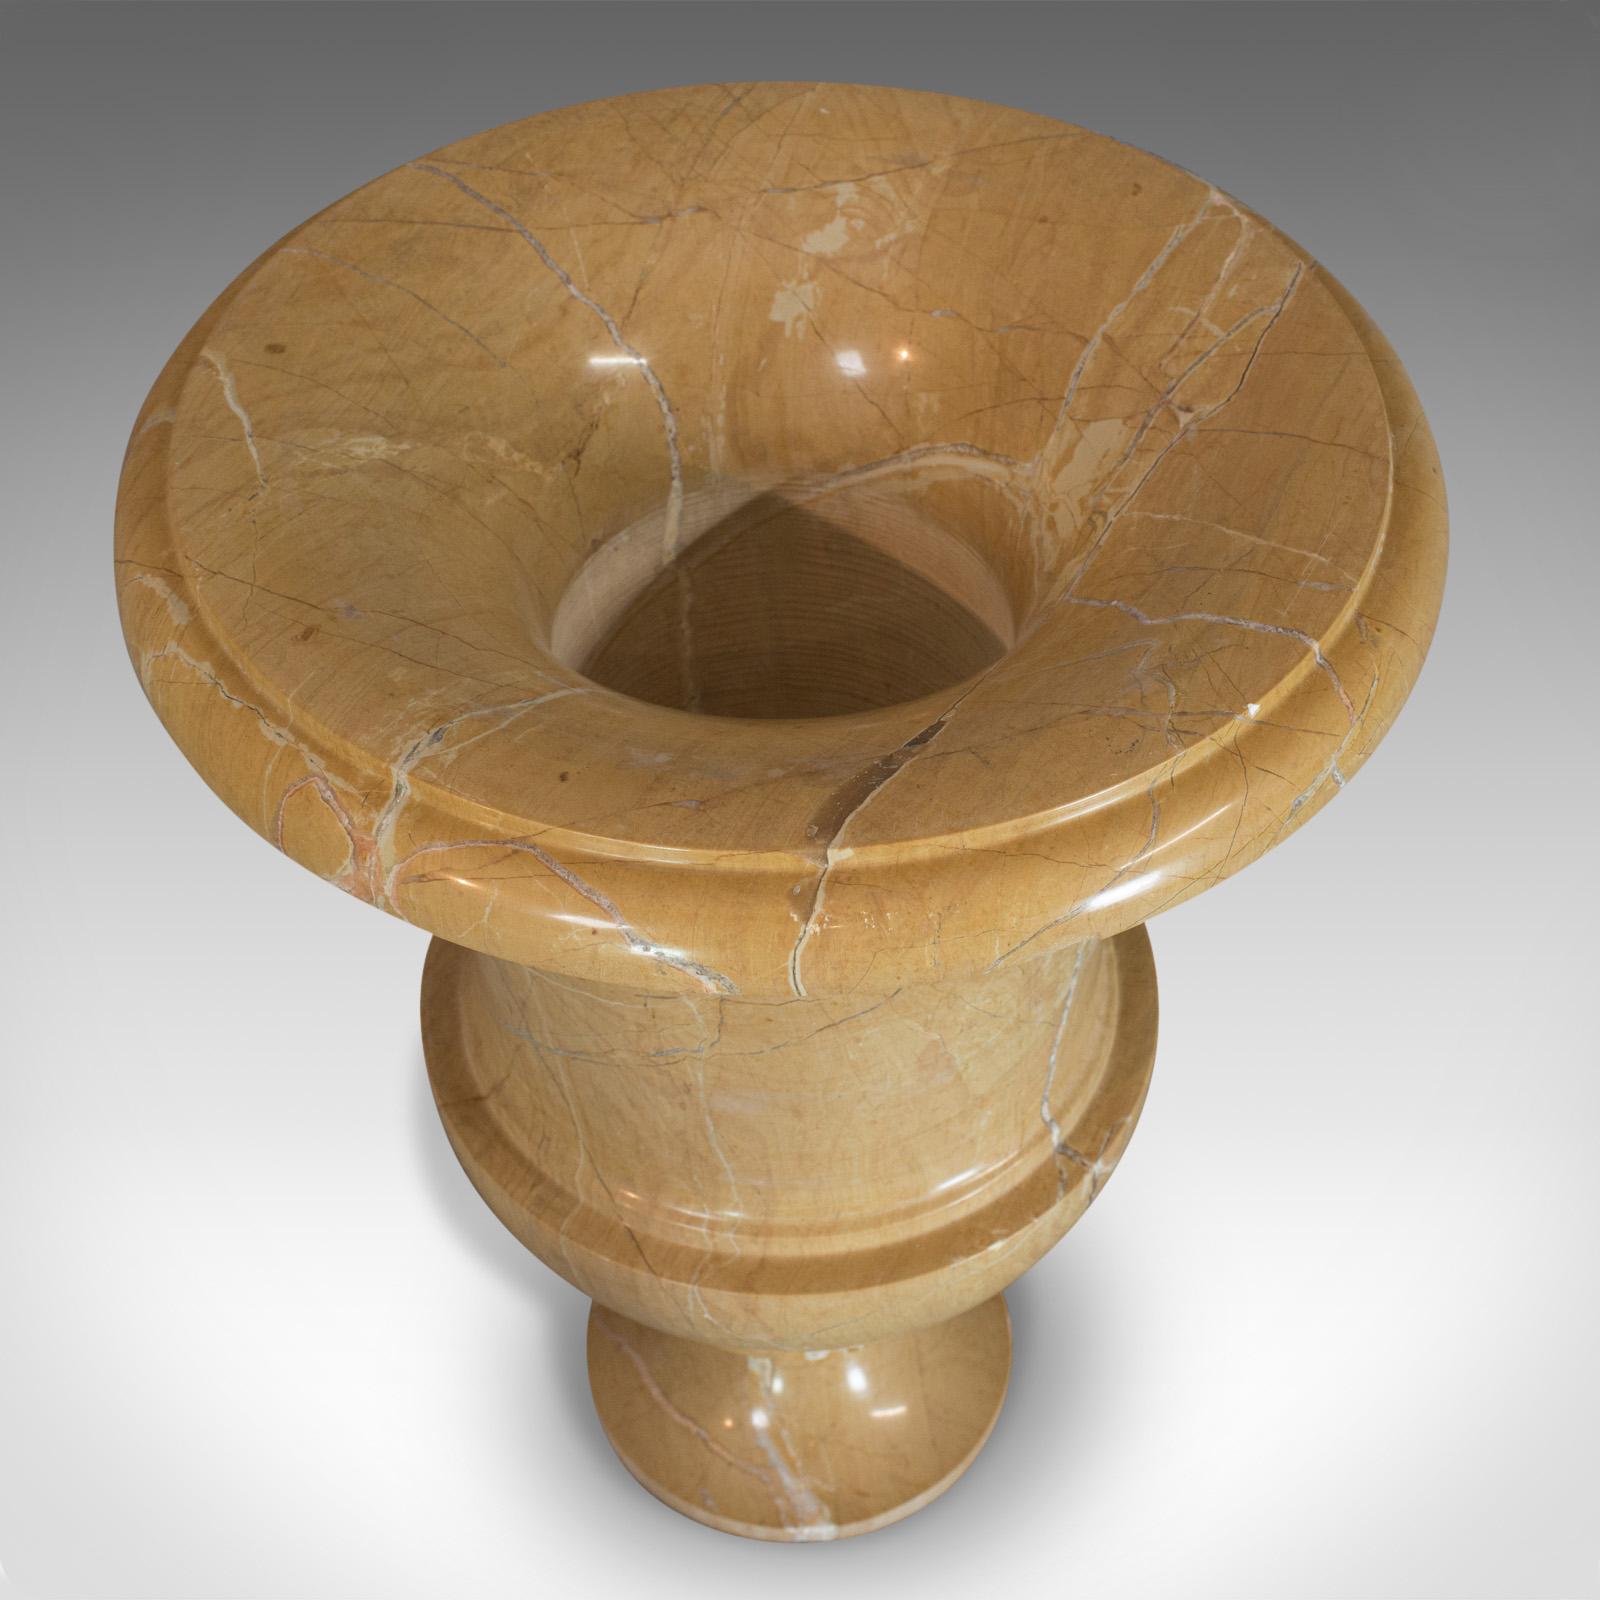 Vintage Ornamental Baluster Urn, English, Golden Pearl Marble, Decorative, Vase For Sale 2